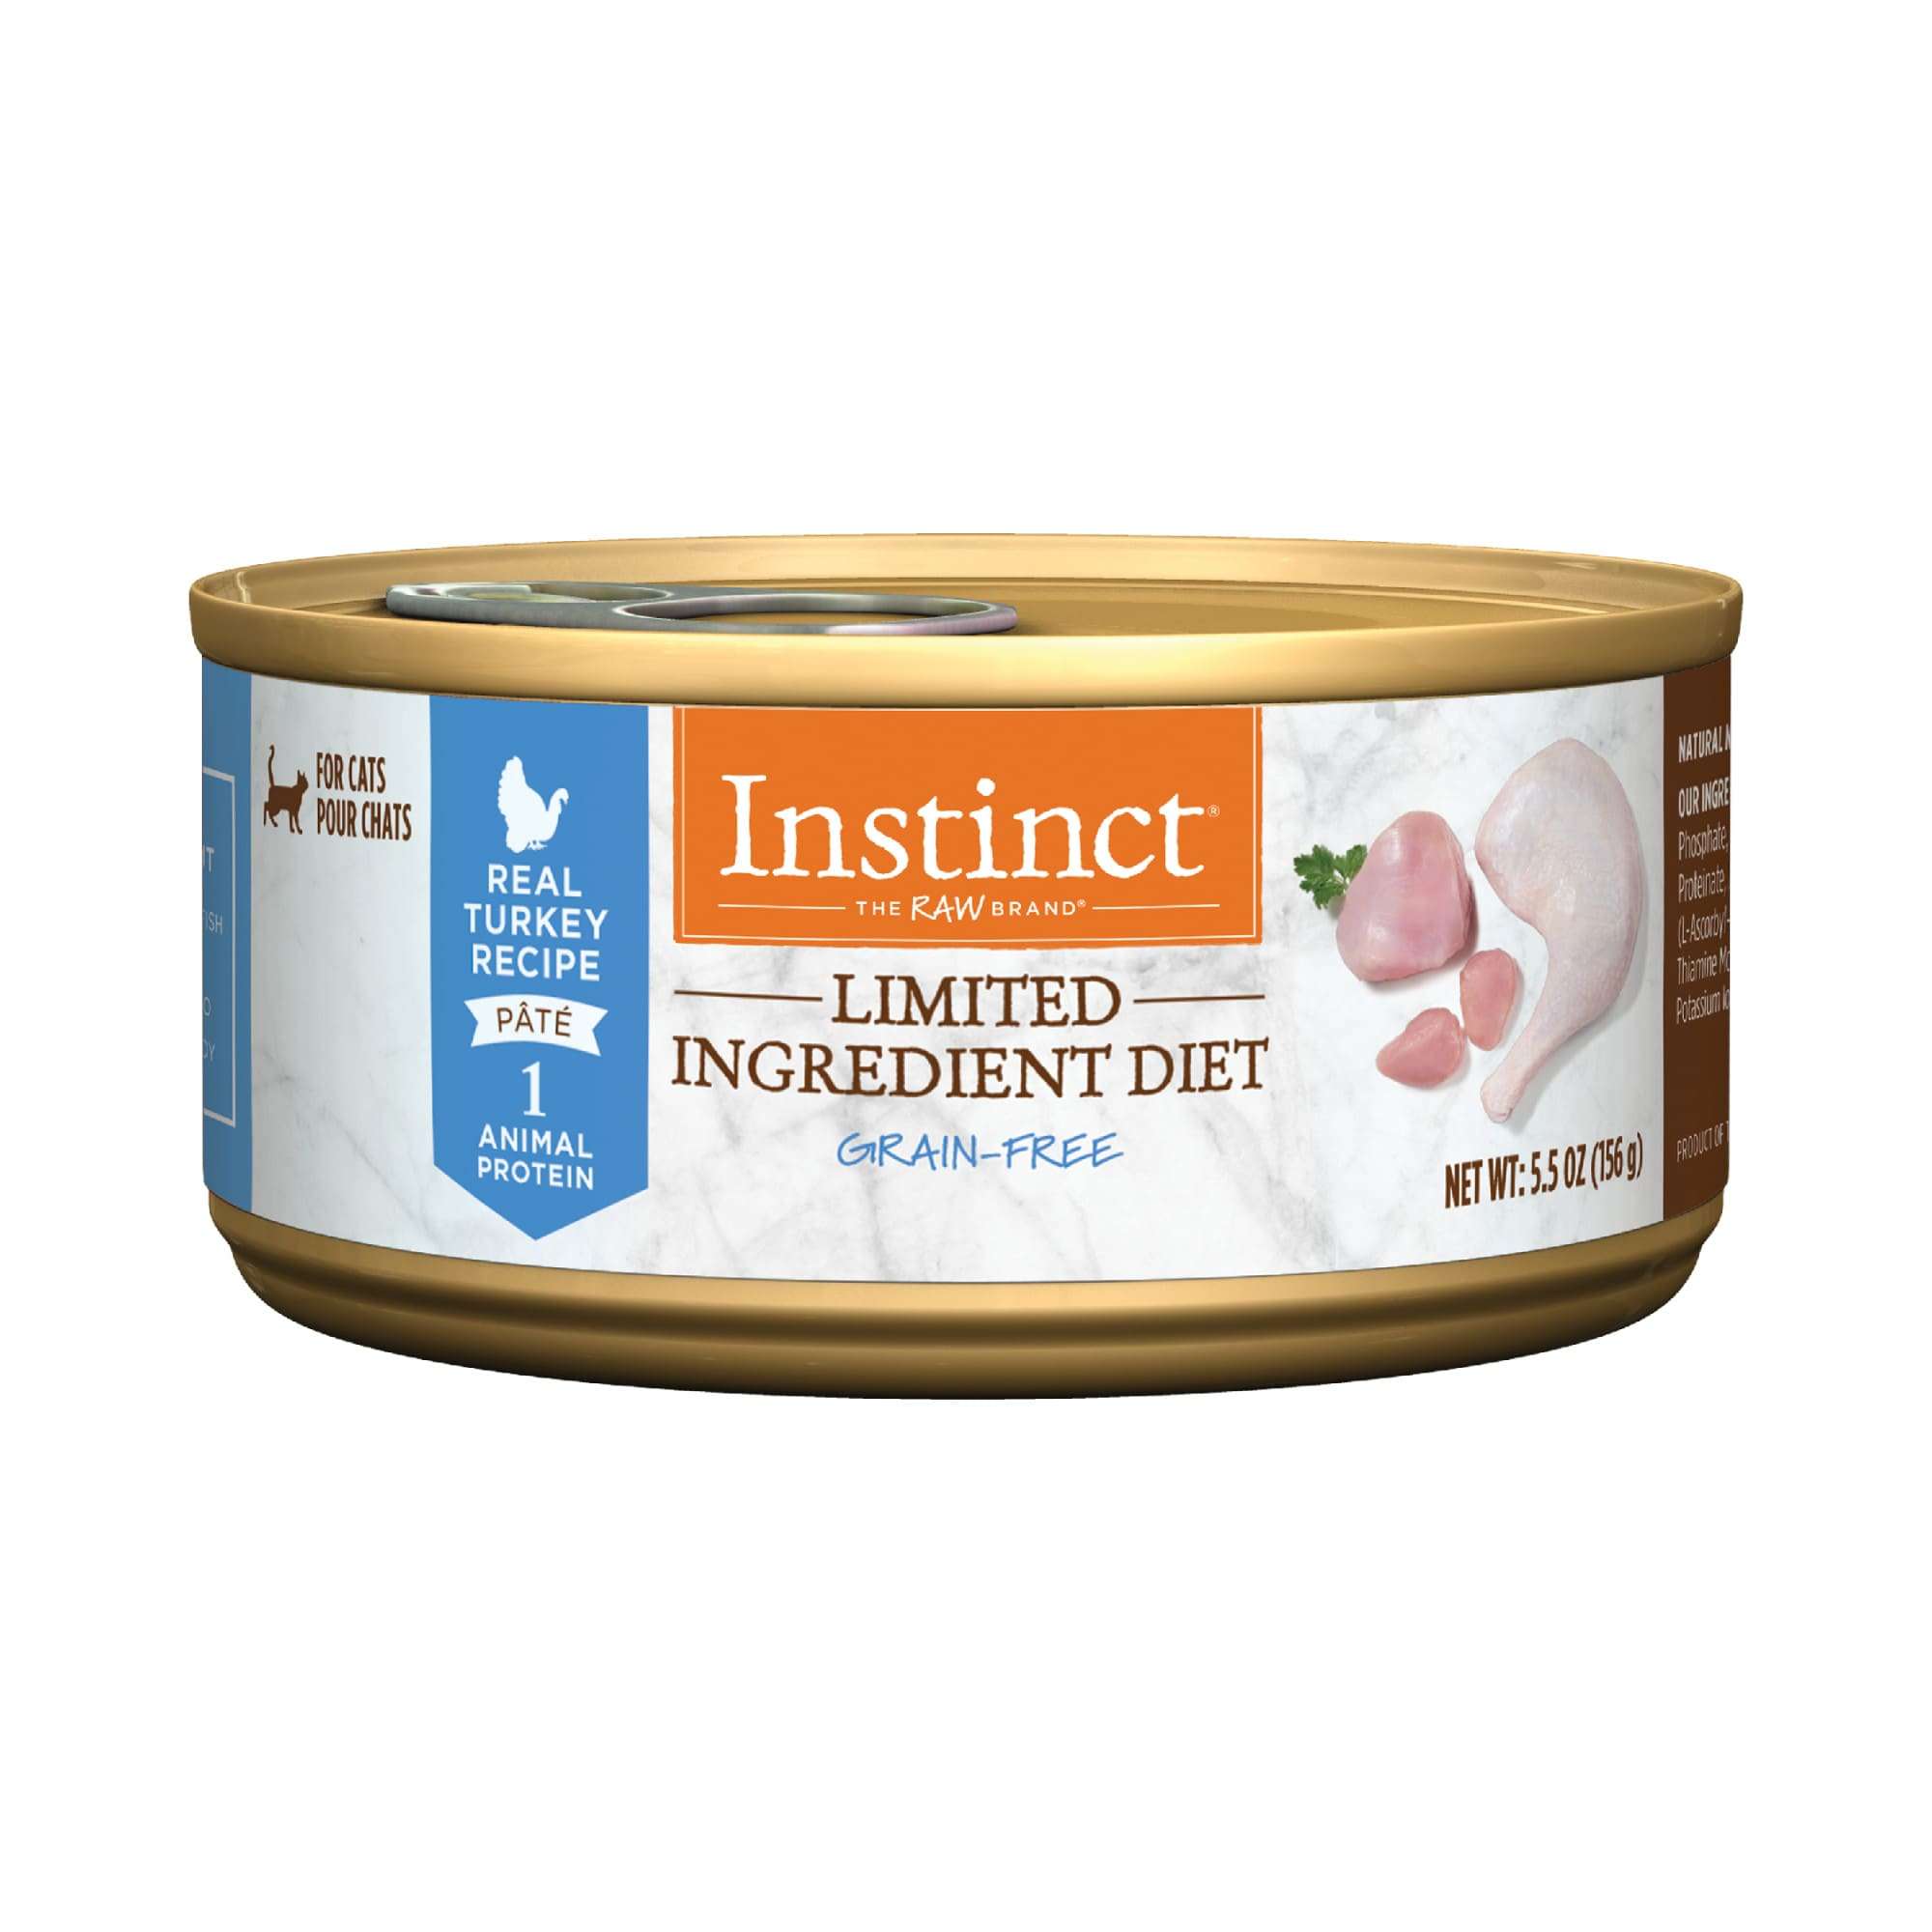 Instinct Limited Ingredient Diet Grain